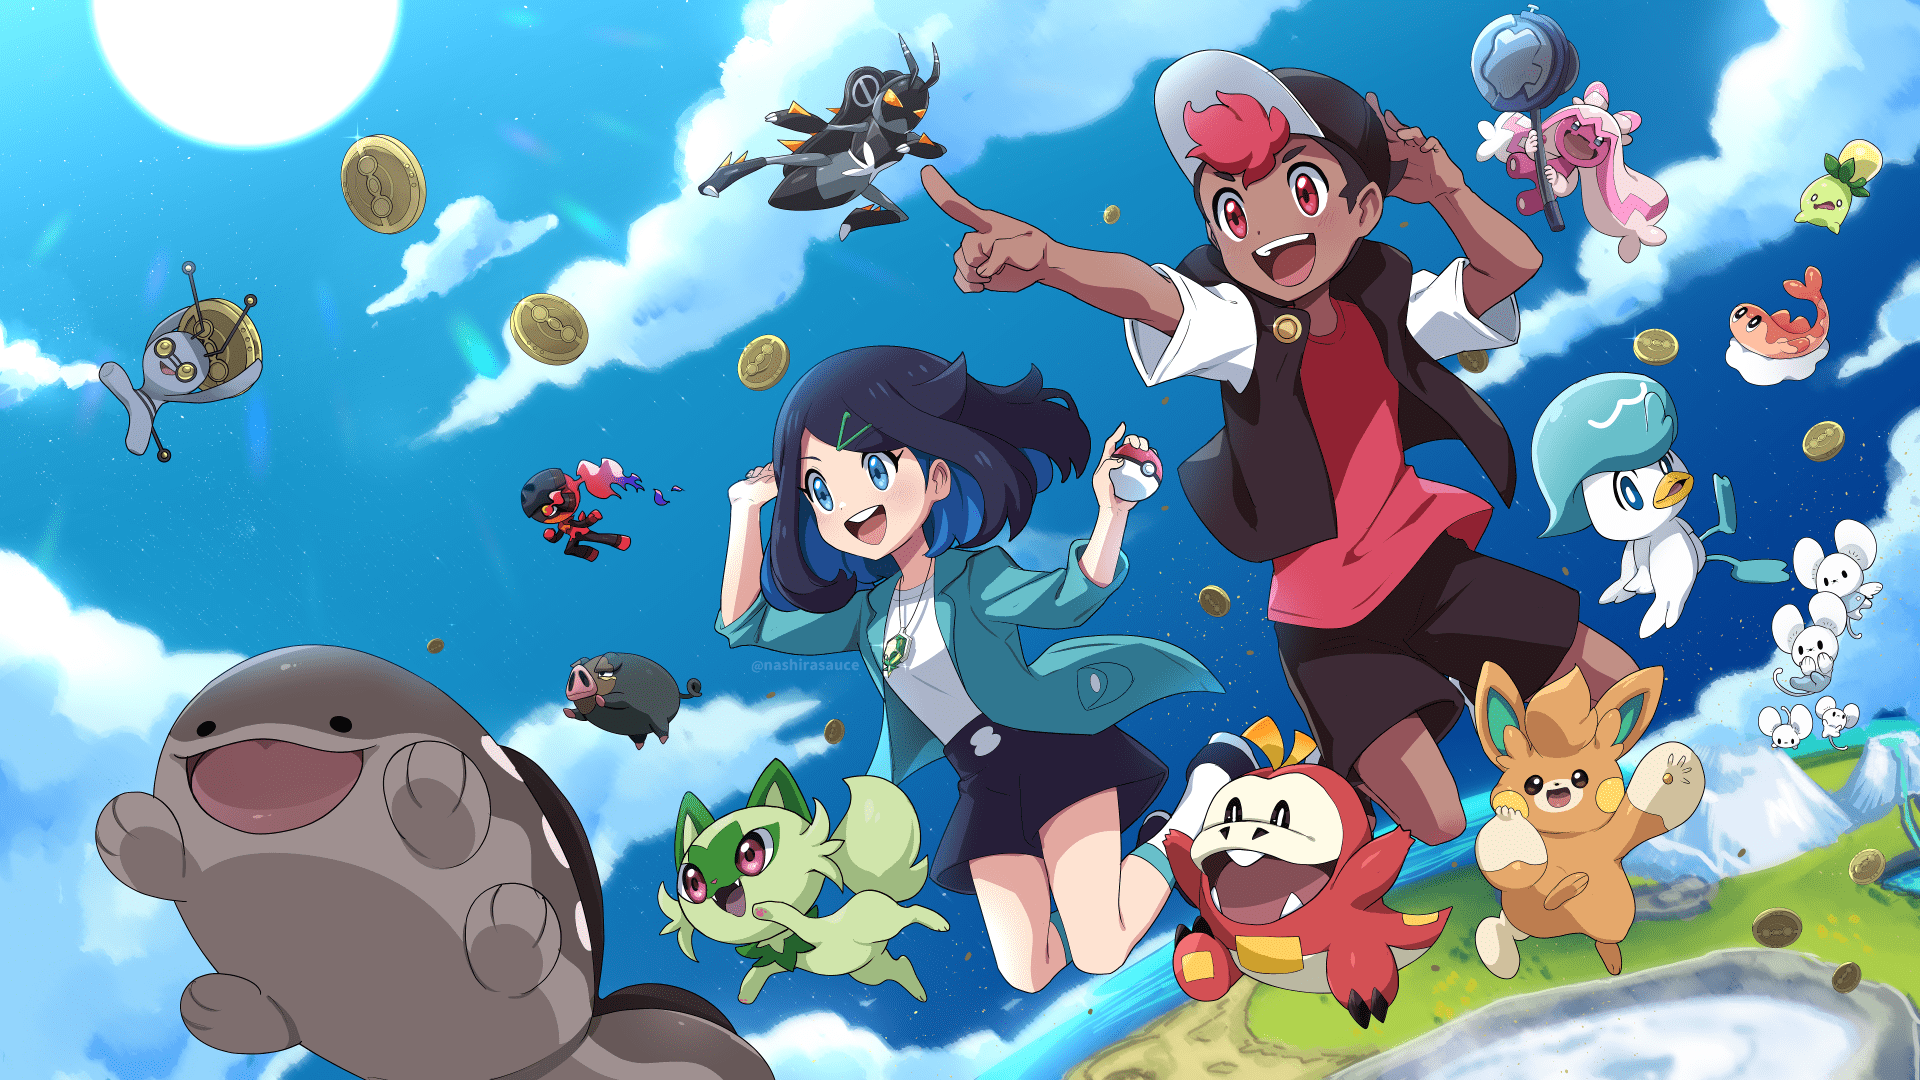 Pokémon: Saiba mais sobre a estreia da nova temporada do anime na Netflix